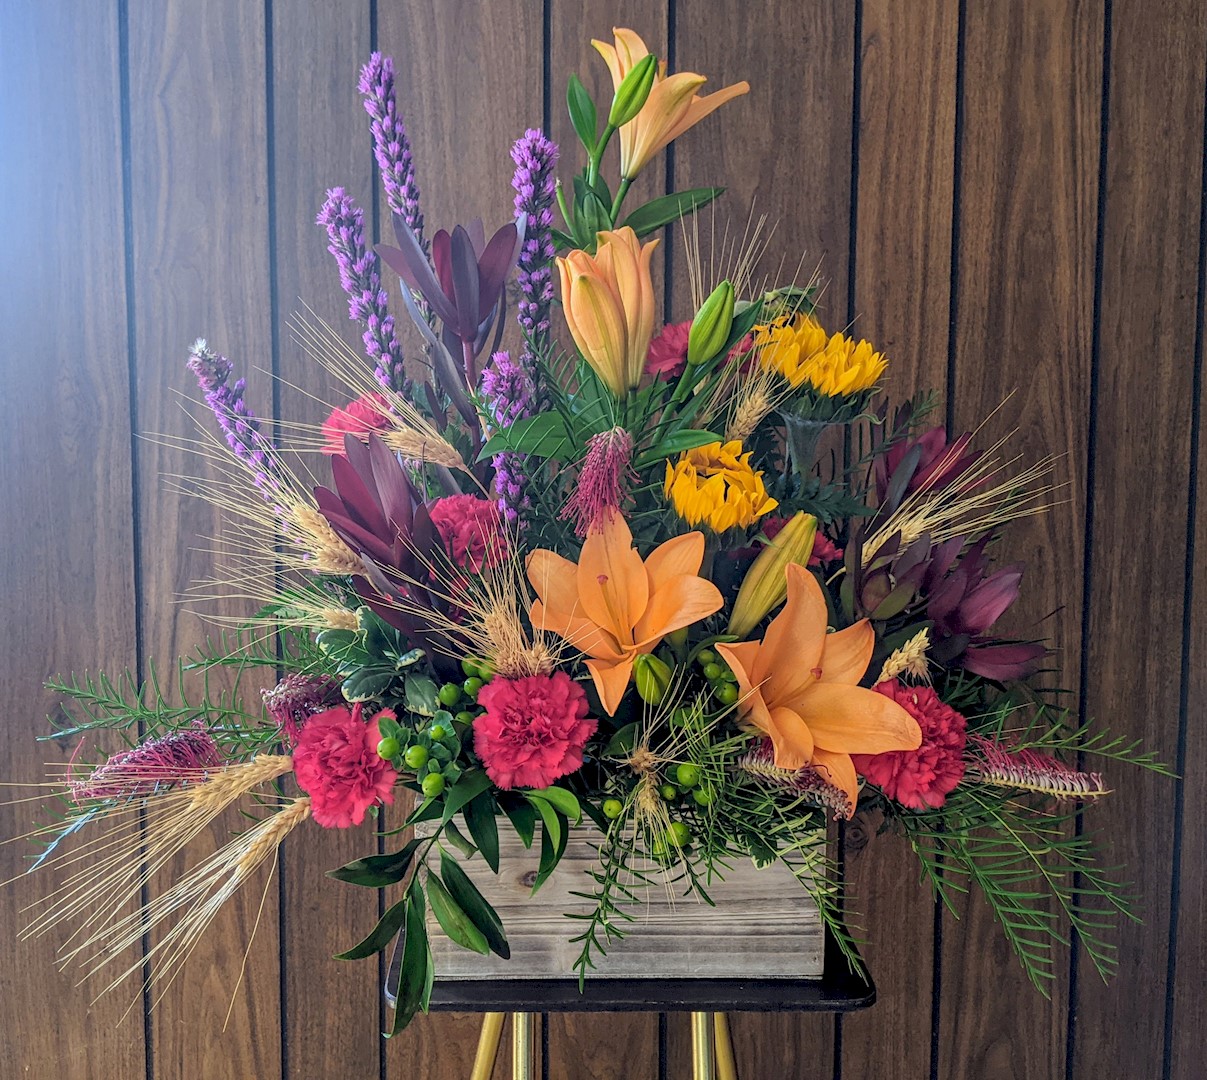 Flowers from Daniel Minkel